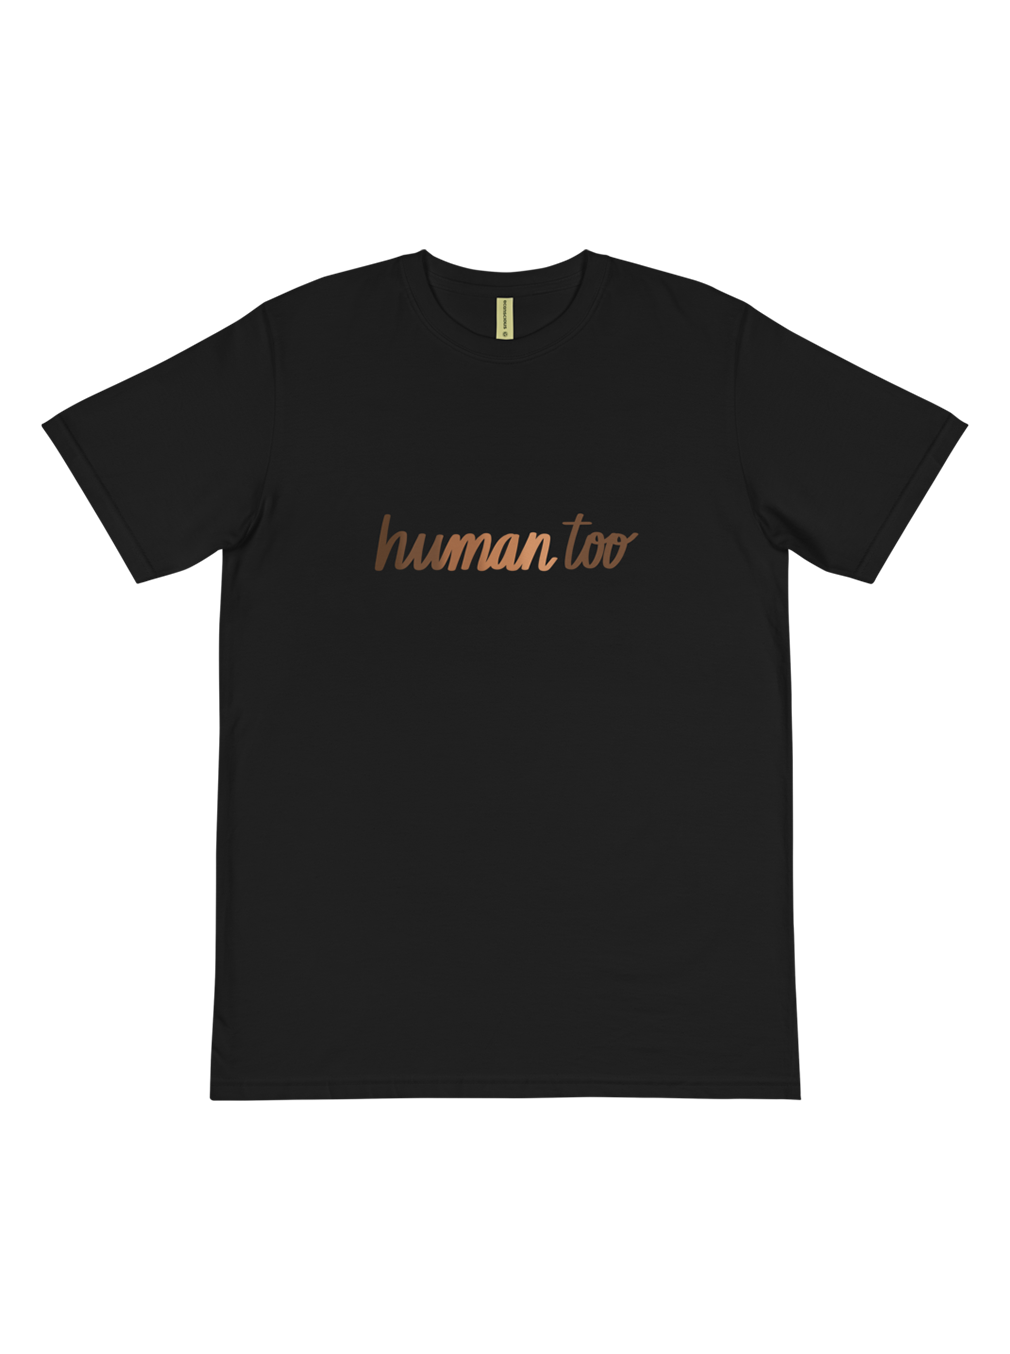 Human Too T-Shirt - Black